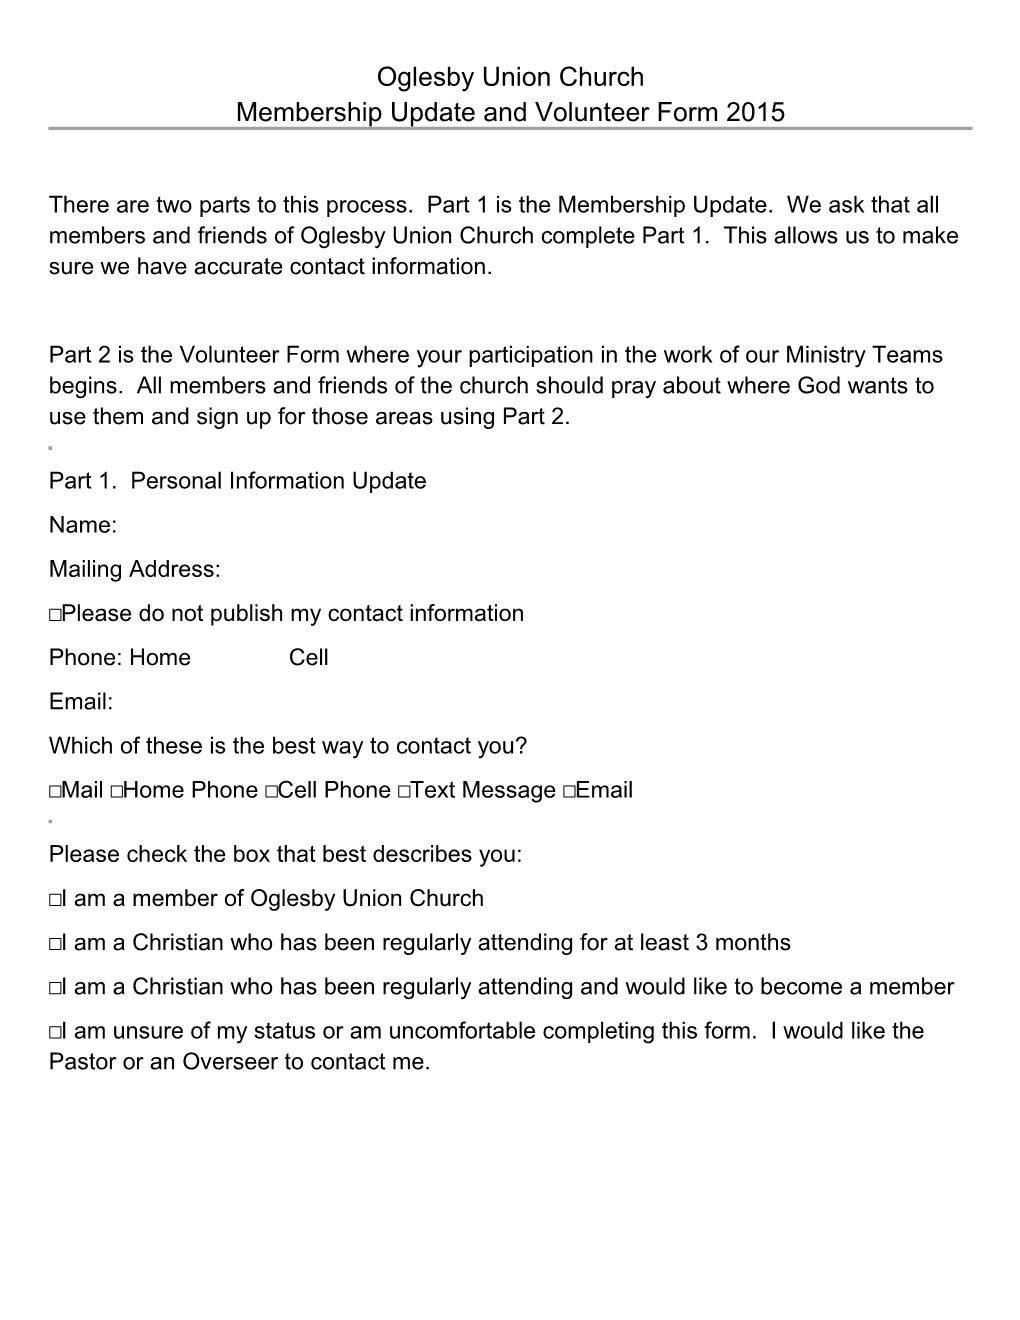 Membership Update and Volunteer Form 2014